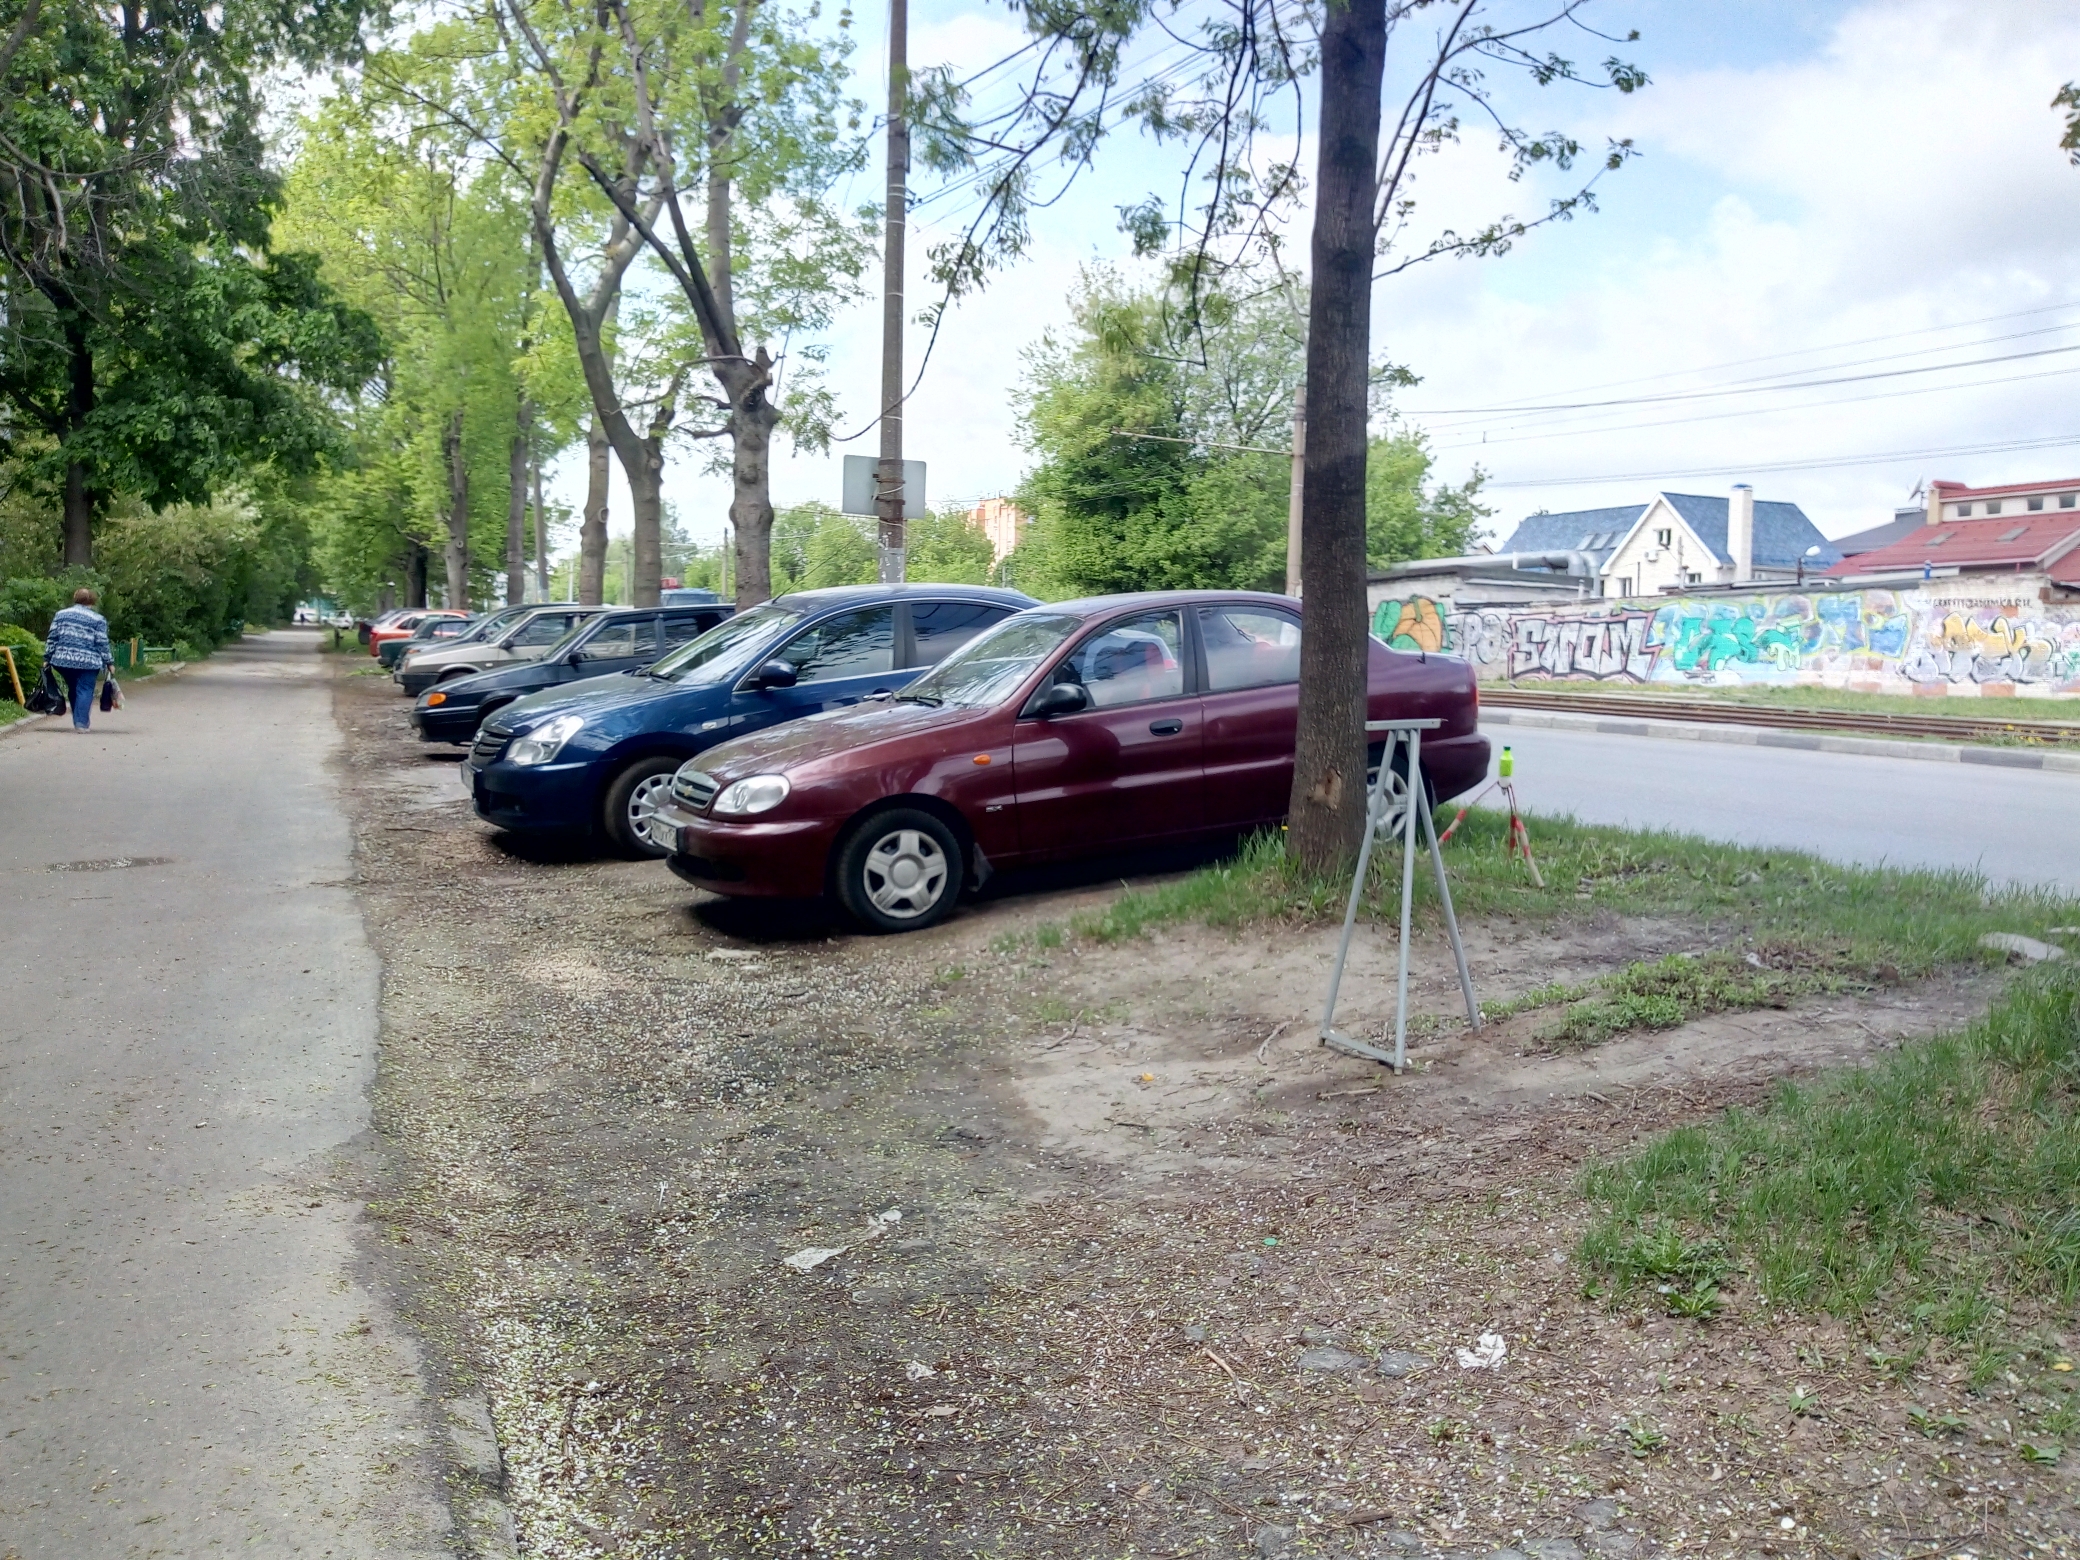 Усилить борьбу с нелегальными парковками на газонах планируют в Нижнем Новгороде - фото 1